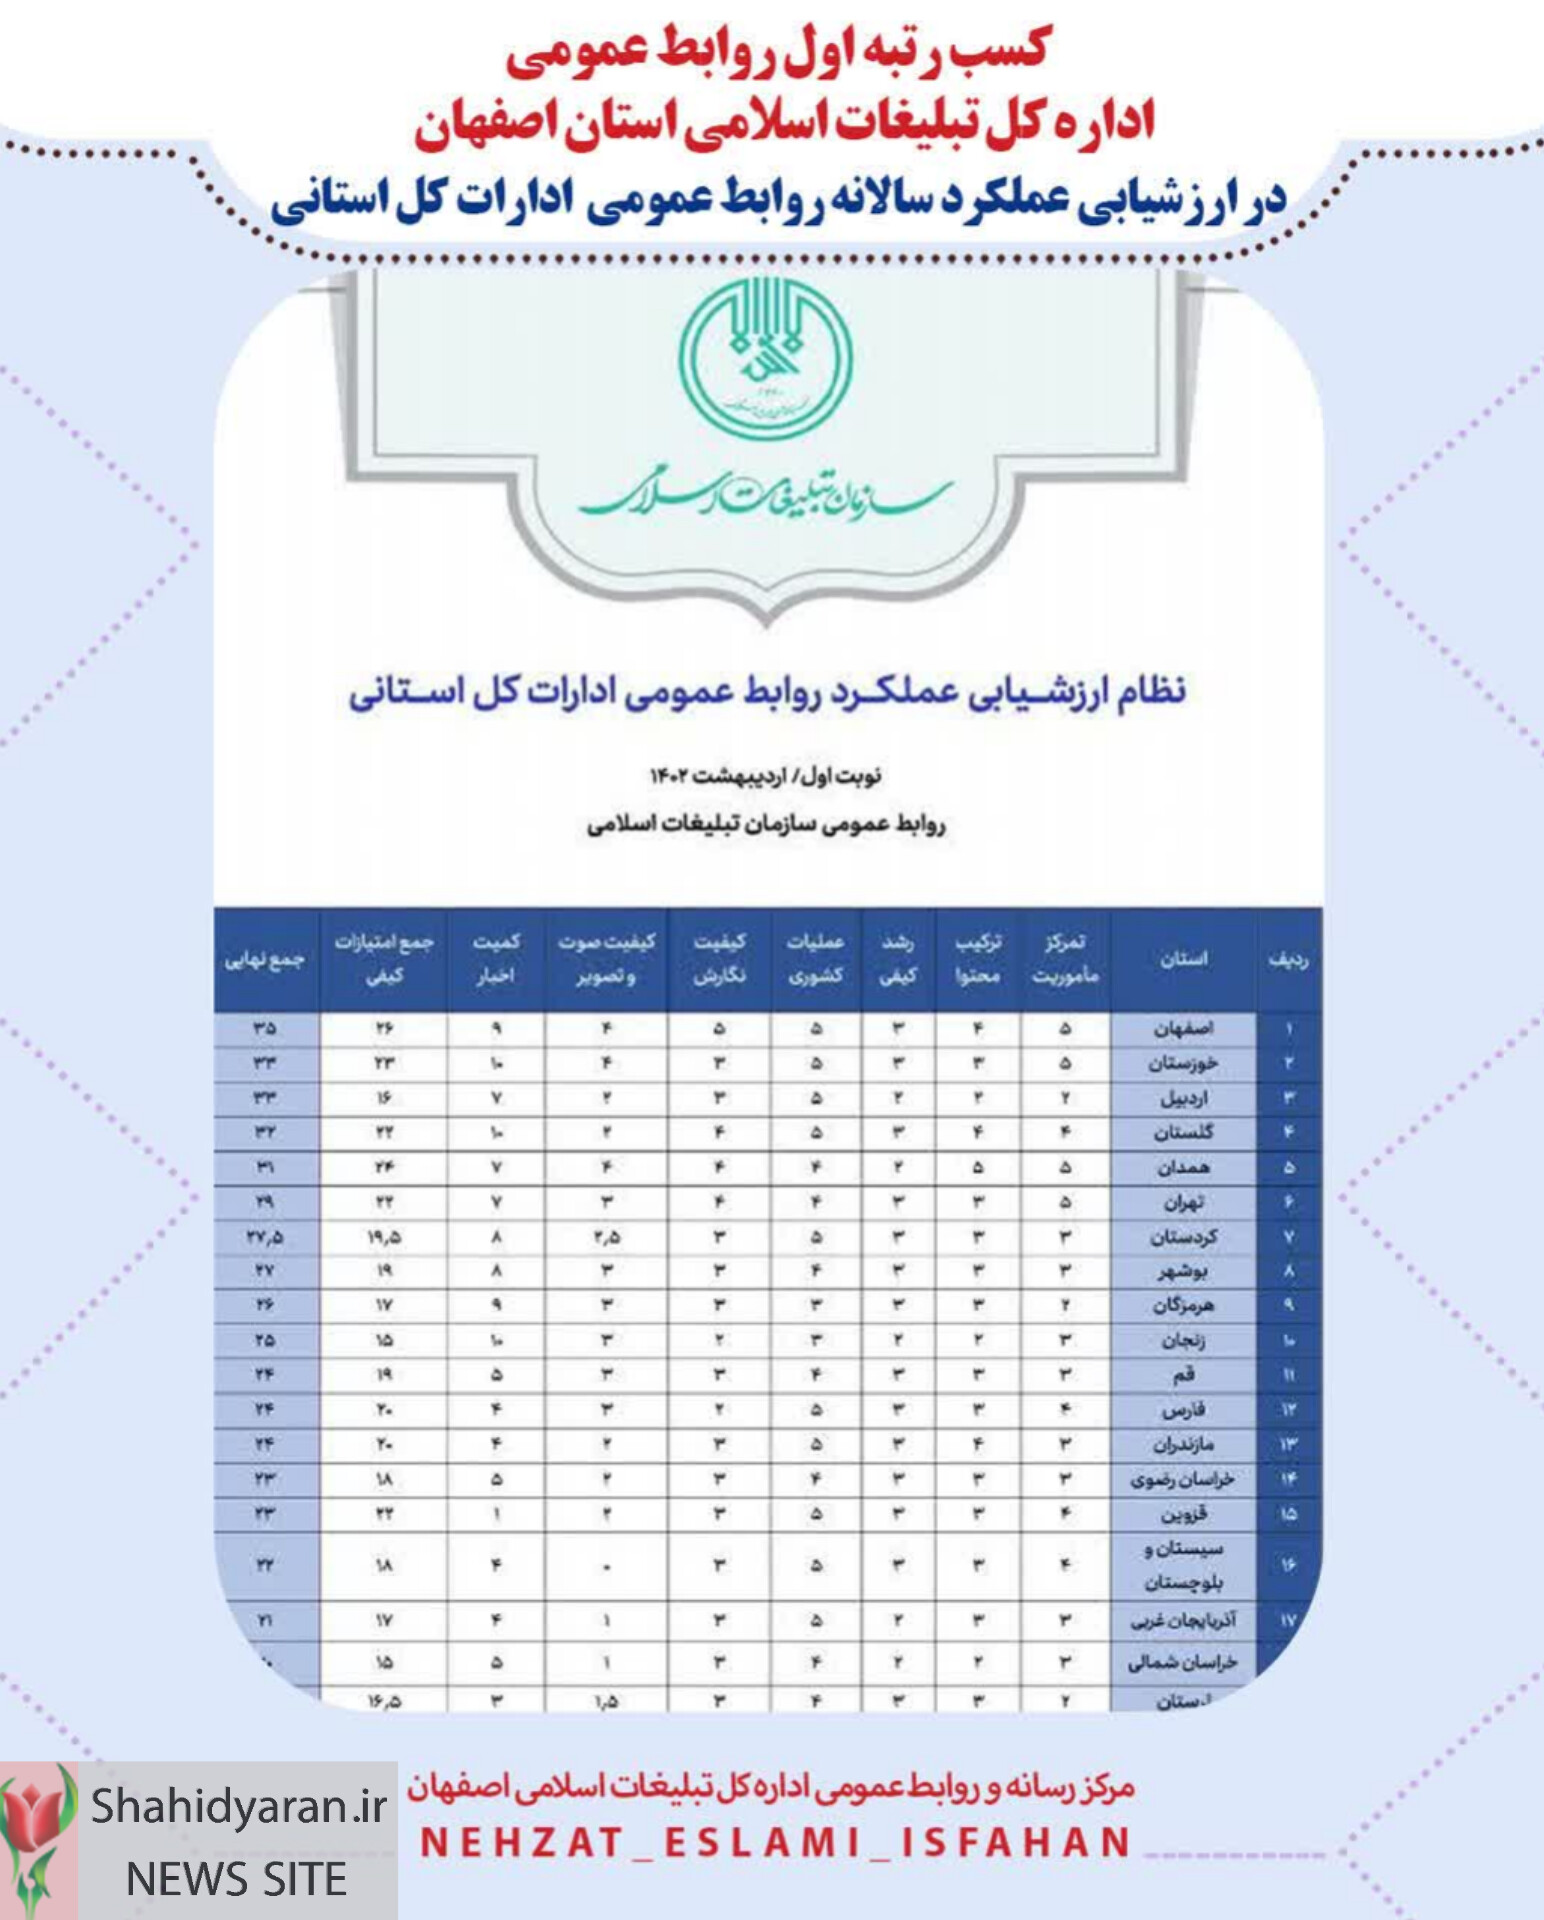 کسب رتبه اول در ارزیابی سالانه سازمان تبلیغات اسلامی کشور